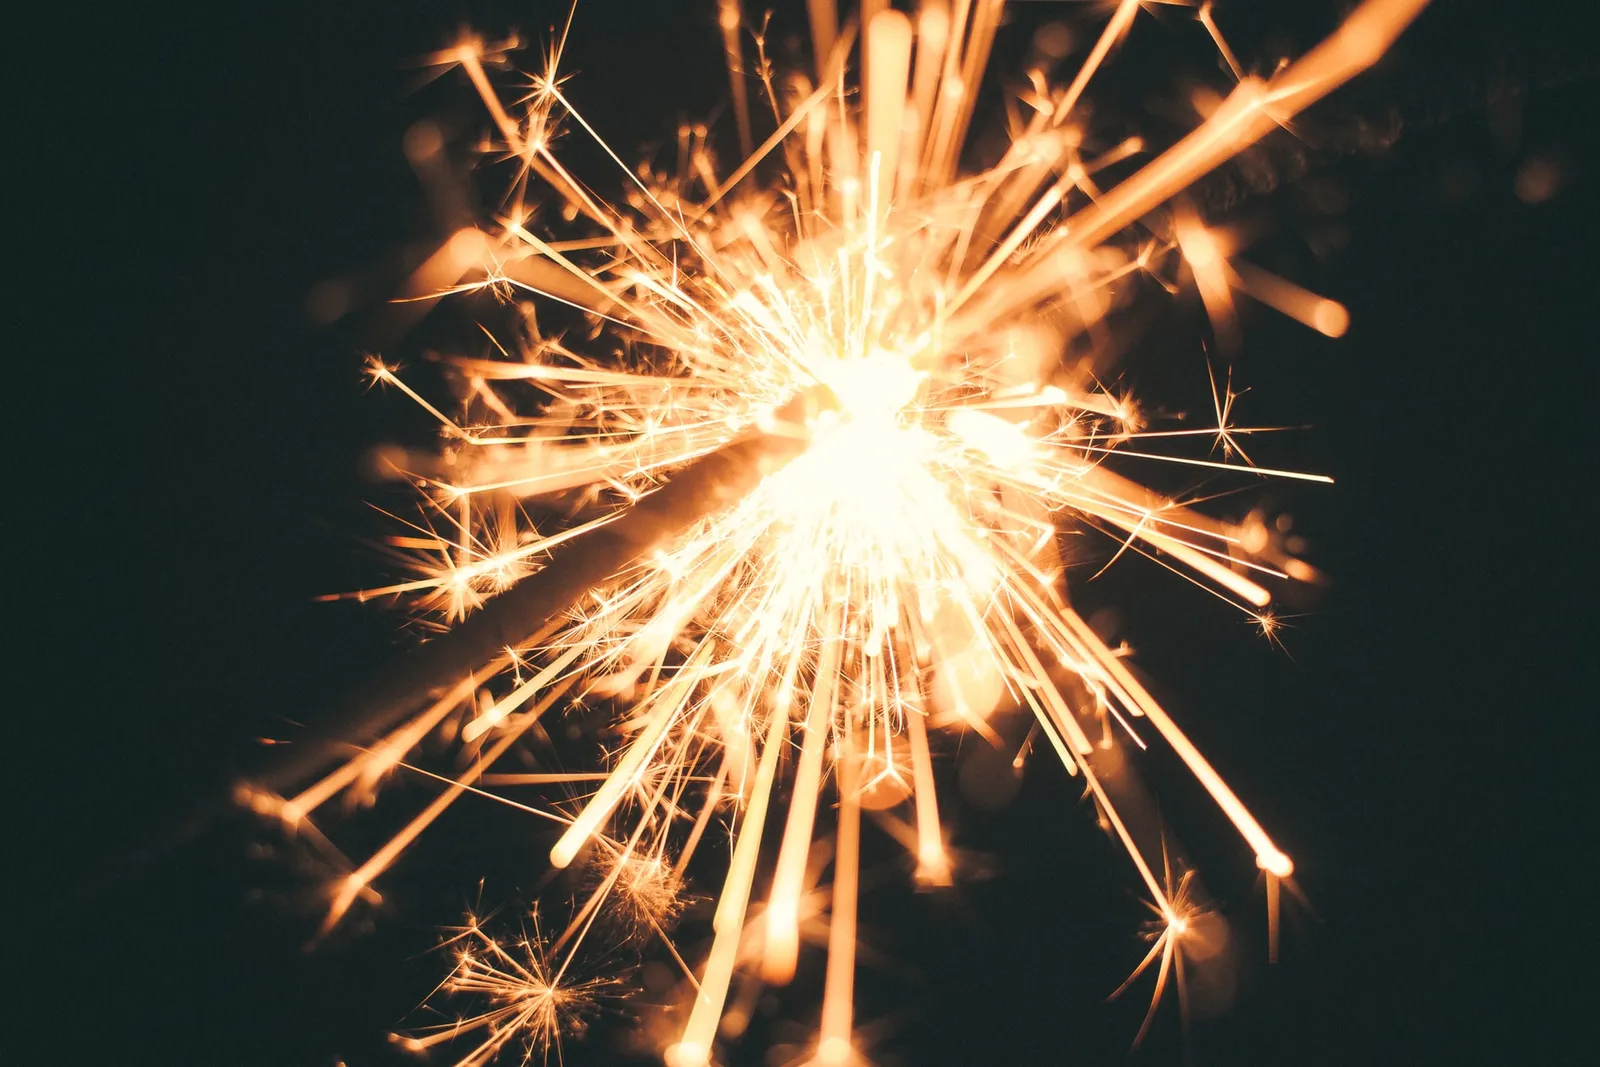 20 Ucapan Selamat Tahun Baru dalam Bahasa Inggris Beserta Artinya